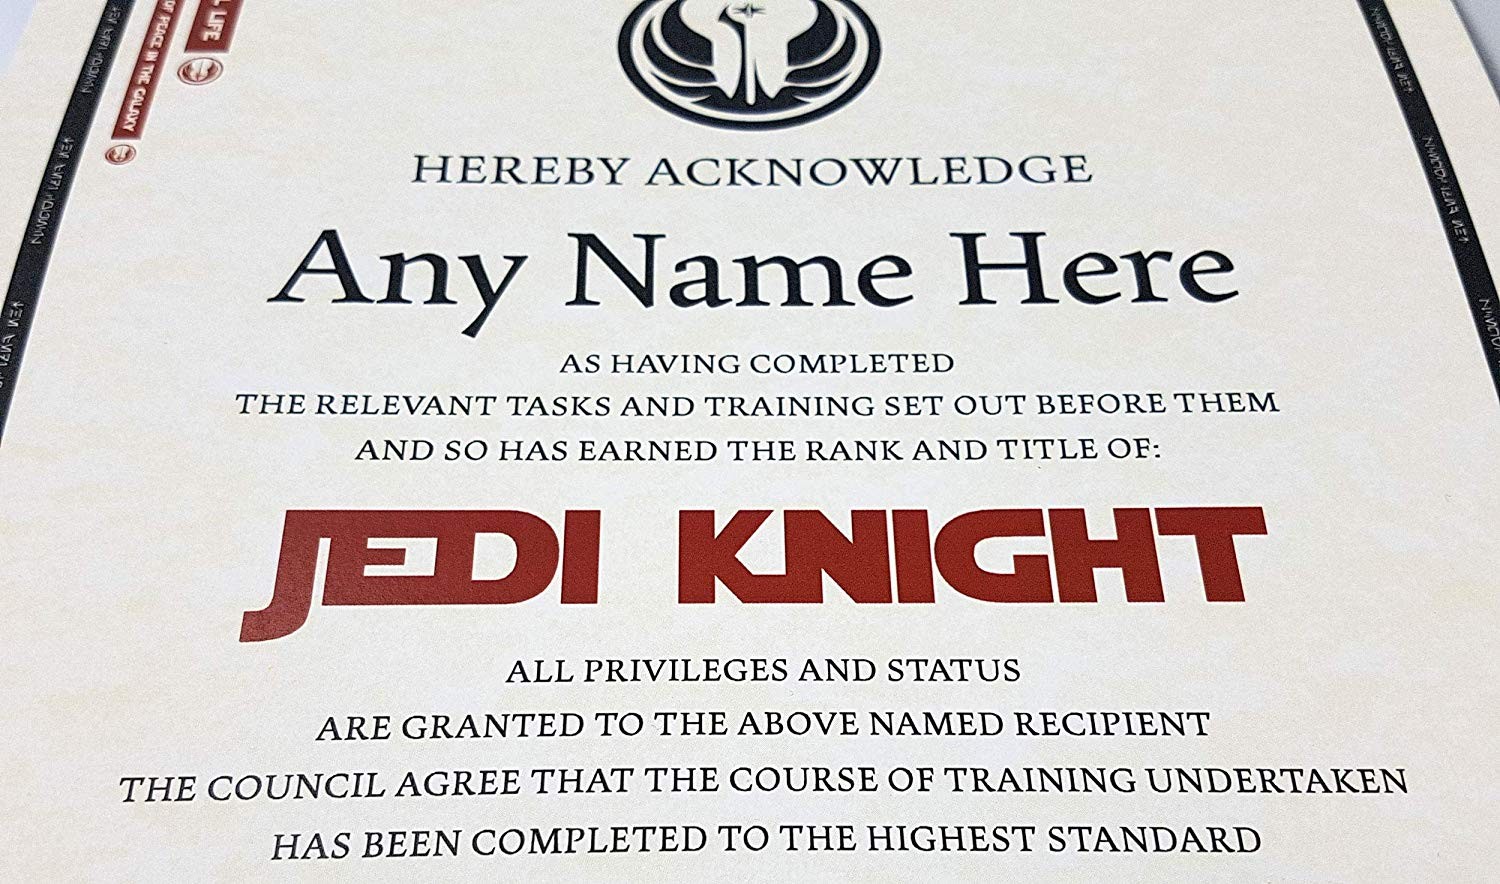 Planetsforsale Star Wars Jedi Knight Certificate In A Luxury